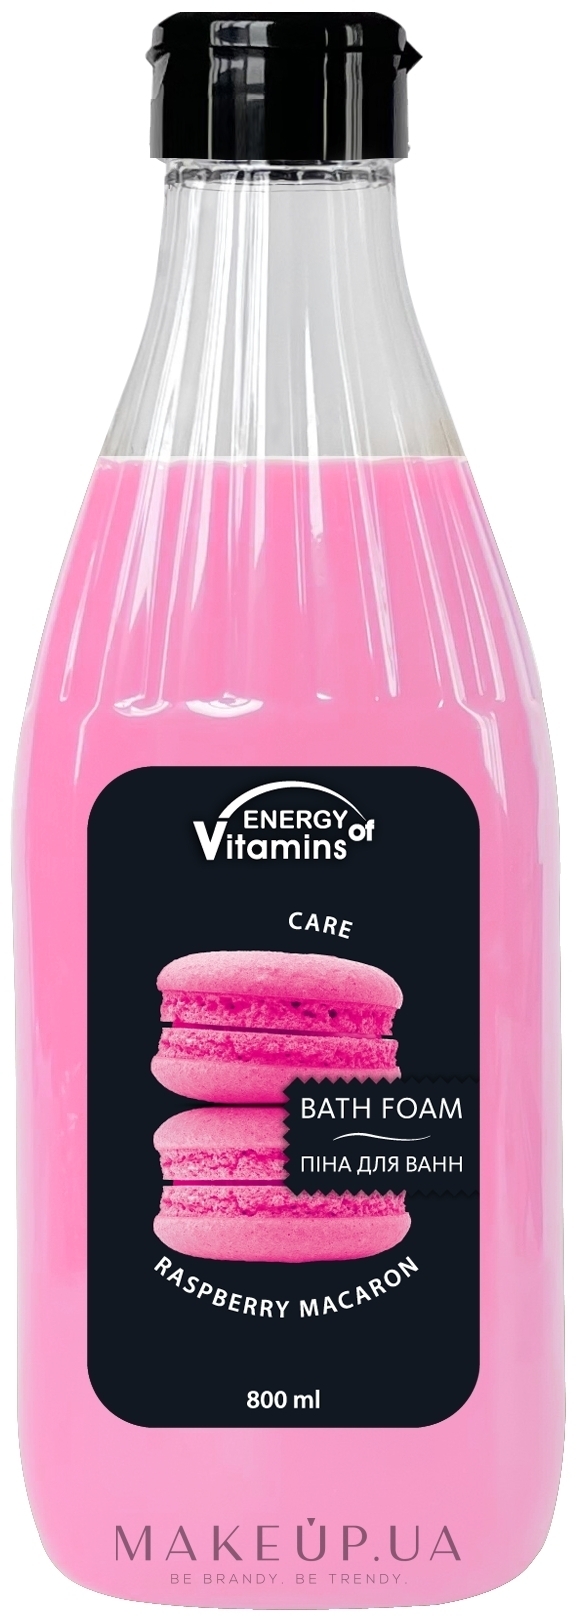 Малиновая пена-шейк для ванн - Energy of Vitamins — фото 800ml